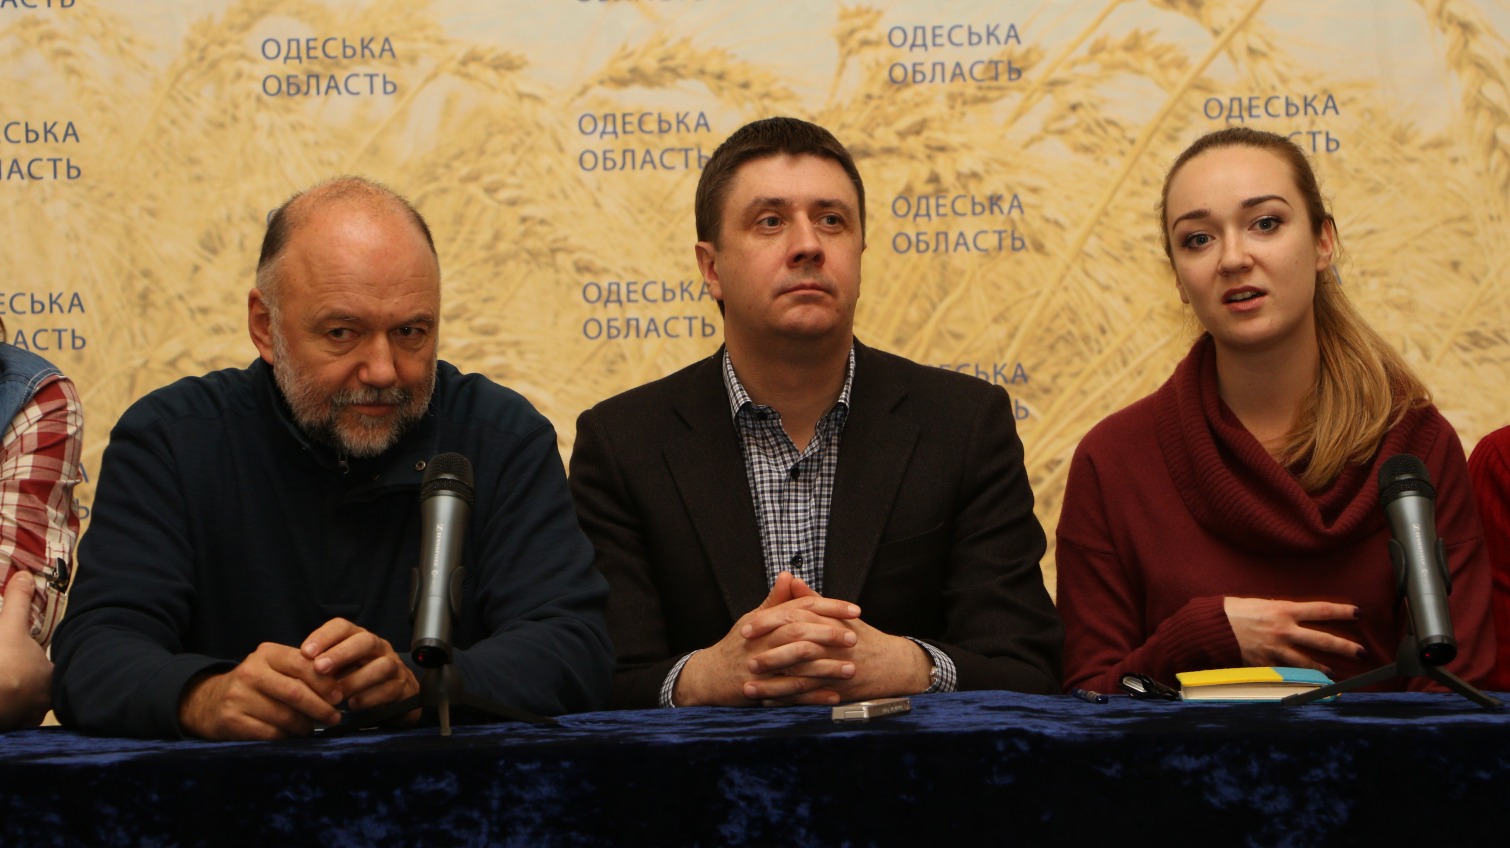 У Одессы большие шансы войти в список ЮНЕСКО, – Кириленко «фото»